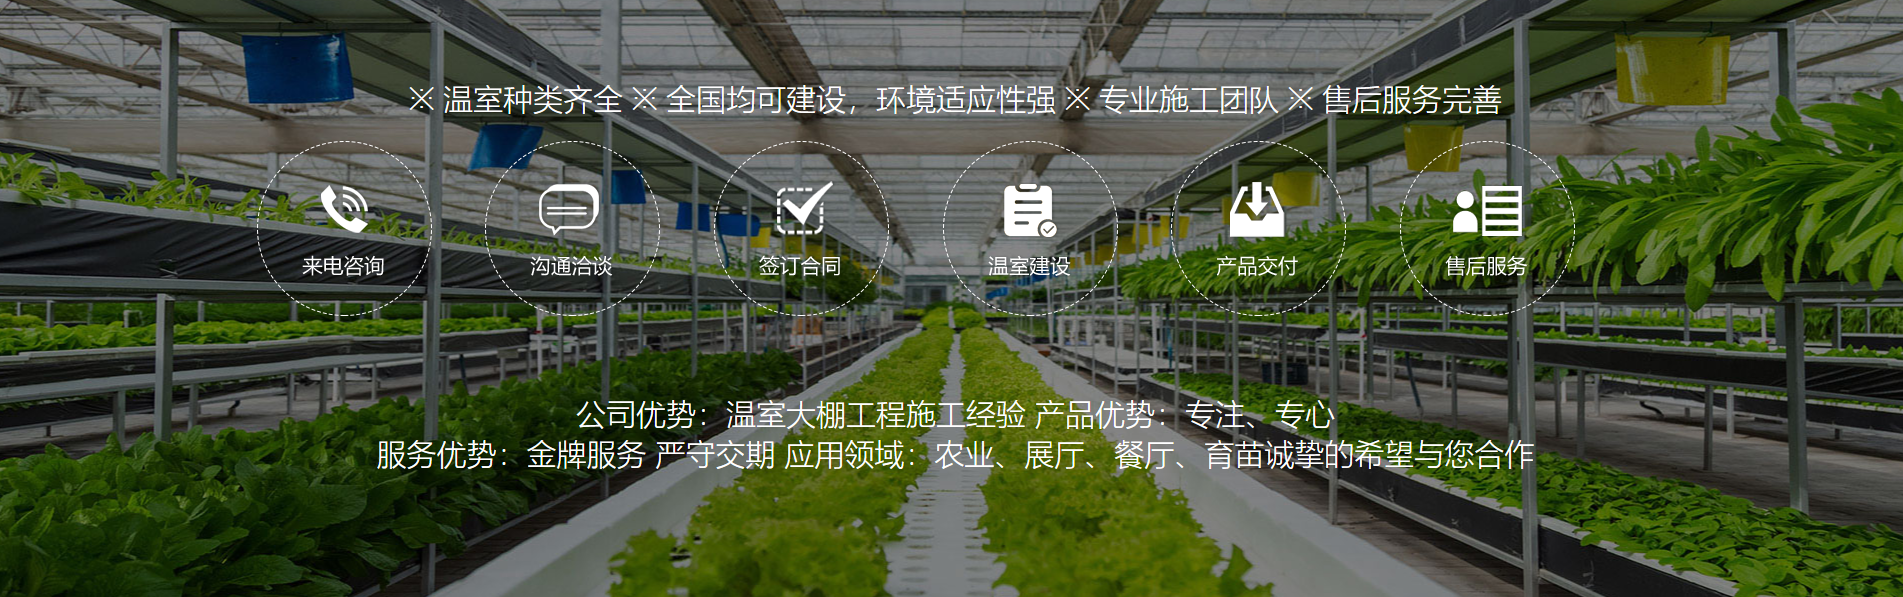 青州高宏温室工程有限公司